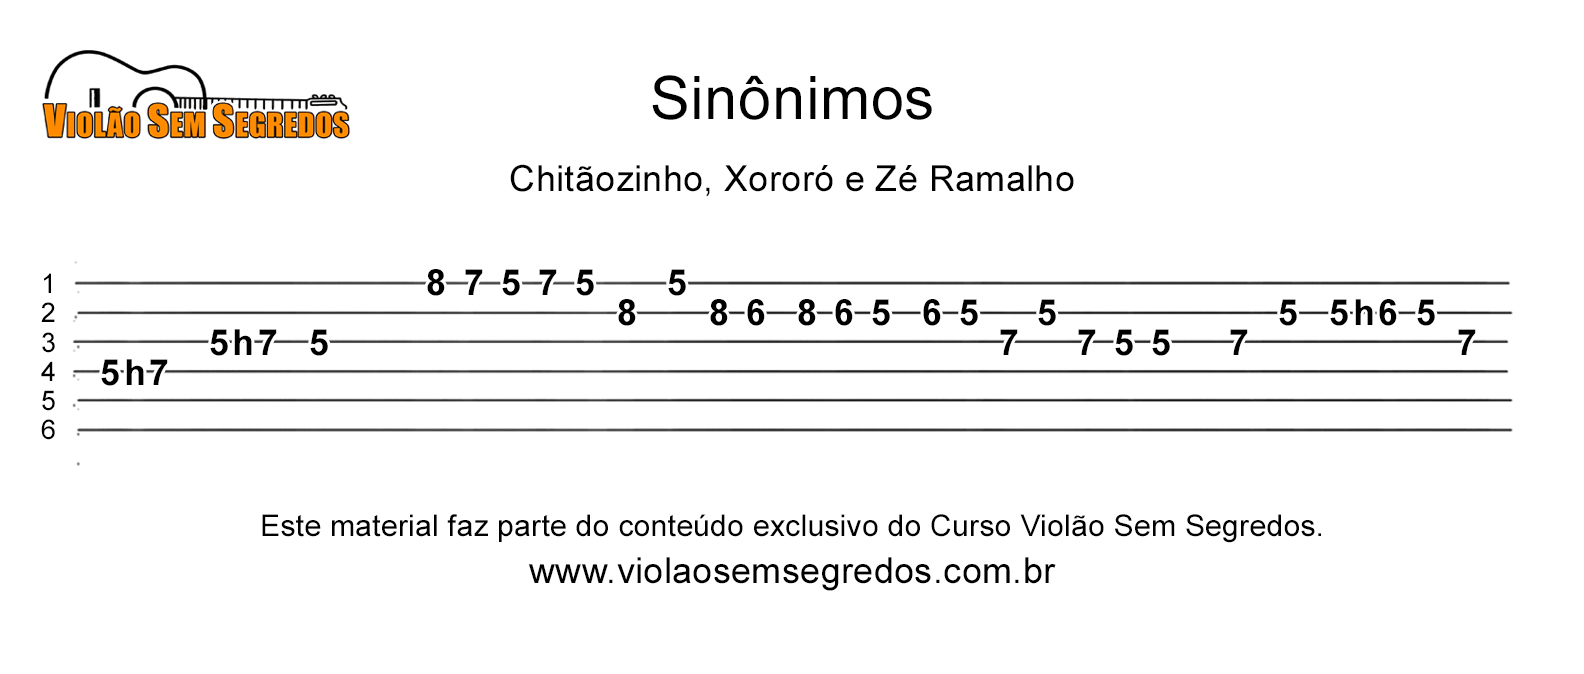 Zé Ramalho - Sinônimos cifra. Aprenda a tocar essa música usando as cifras,  tablaturas e versão simplificada com o Ci… em 2023